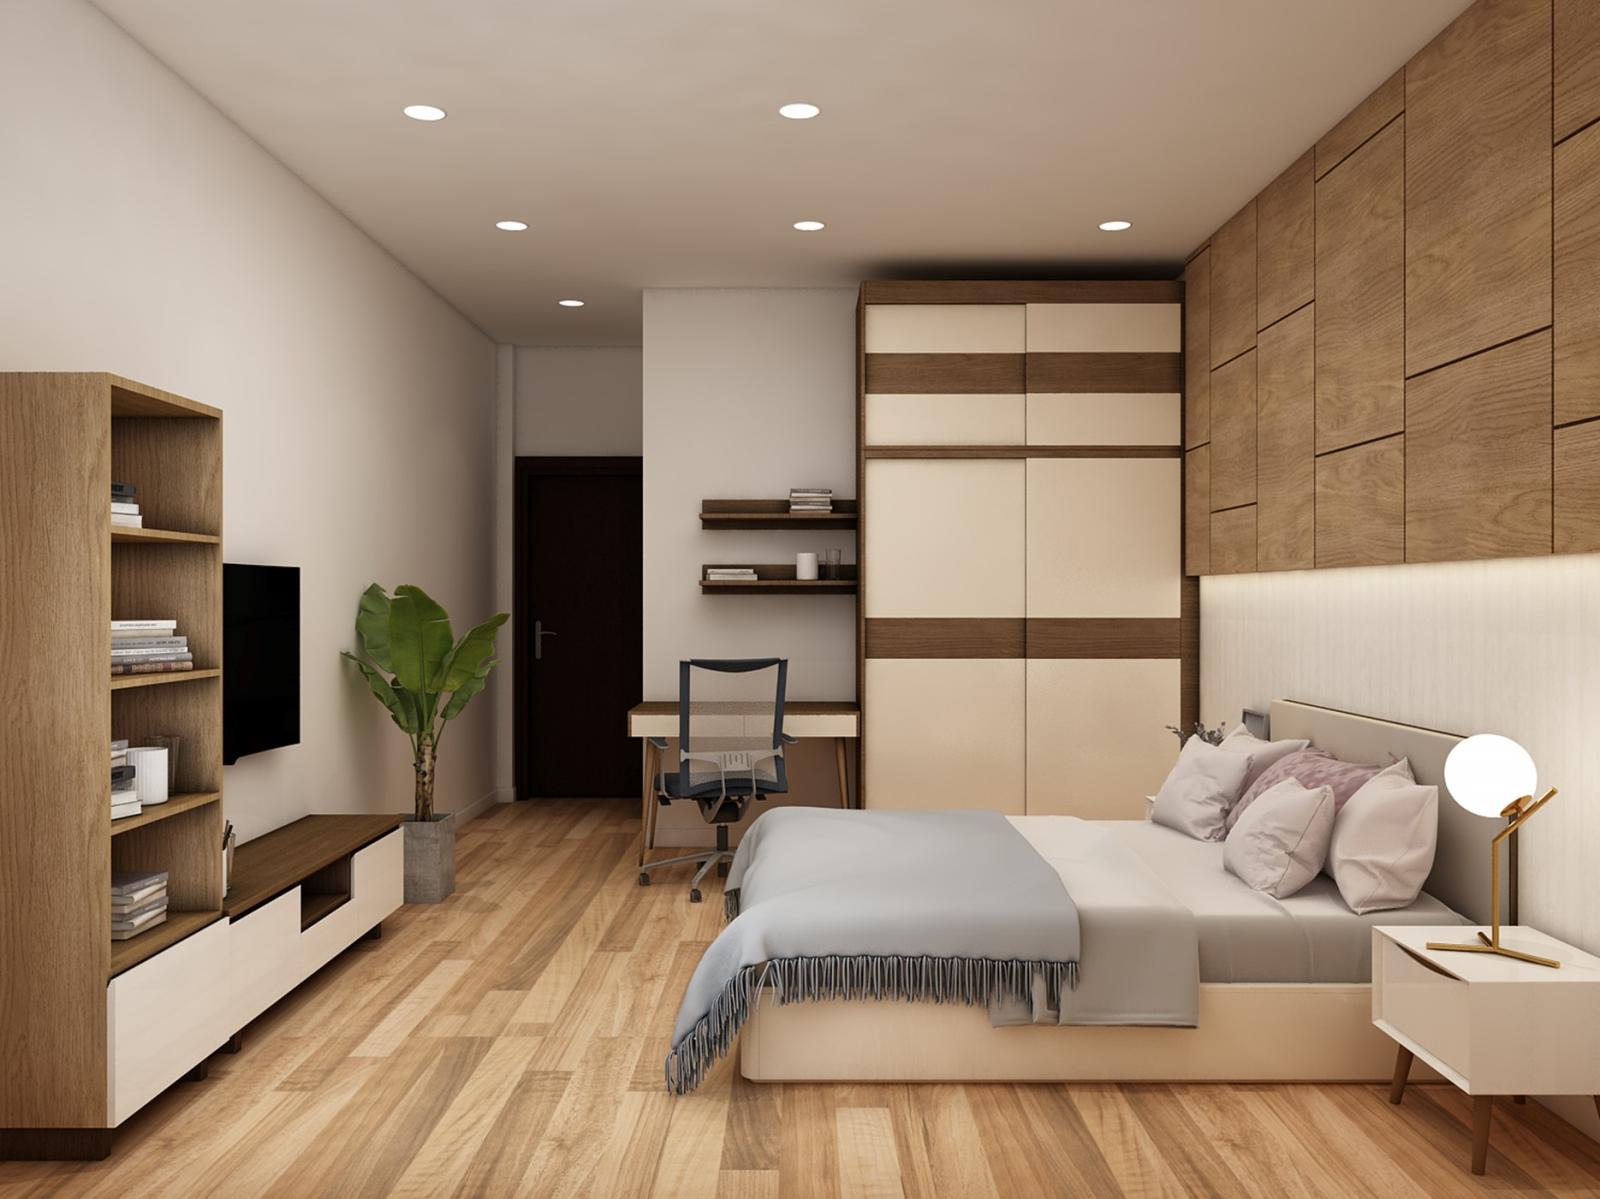 Phòng ngủ master được thiết kế nội thất đồng điệu về màu sắc giúp căn phòng trở nên sang trọng, thoáng rộng hơn.